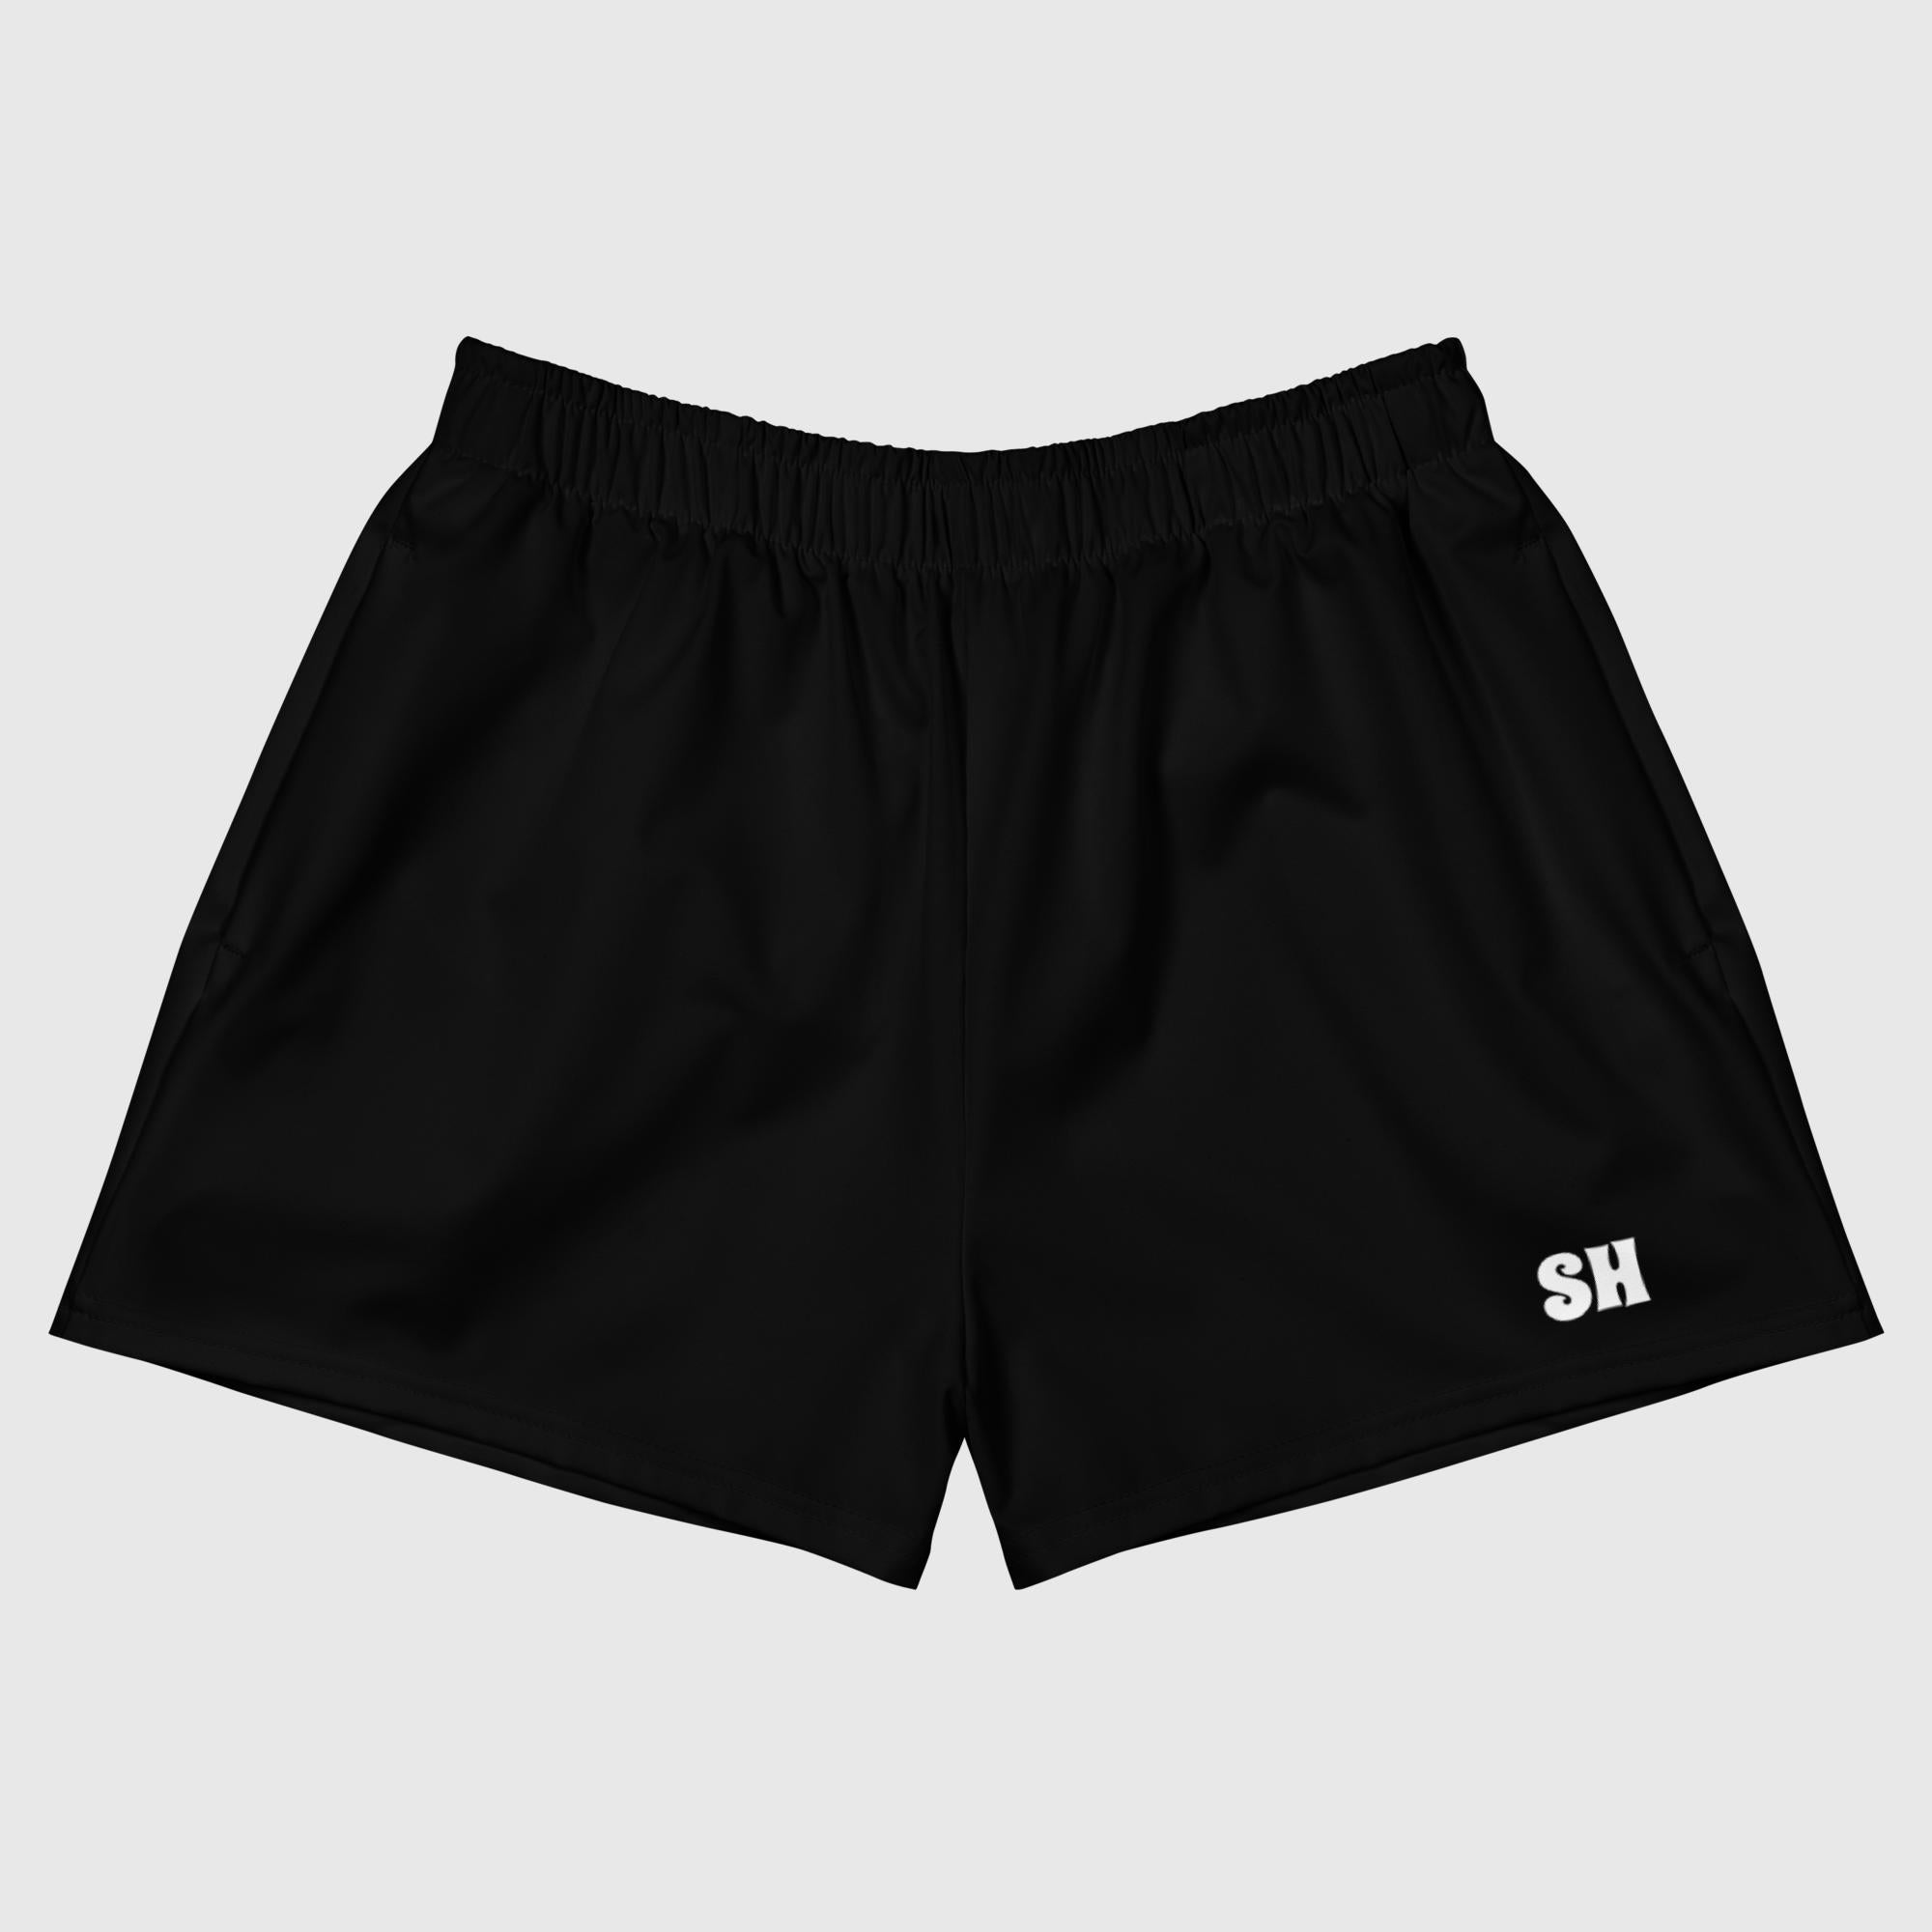 Shorts deportivos unisex con estampado integral - Negro